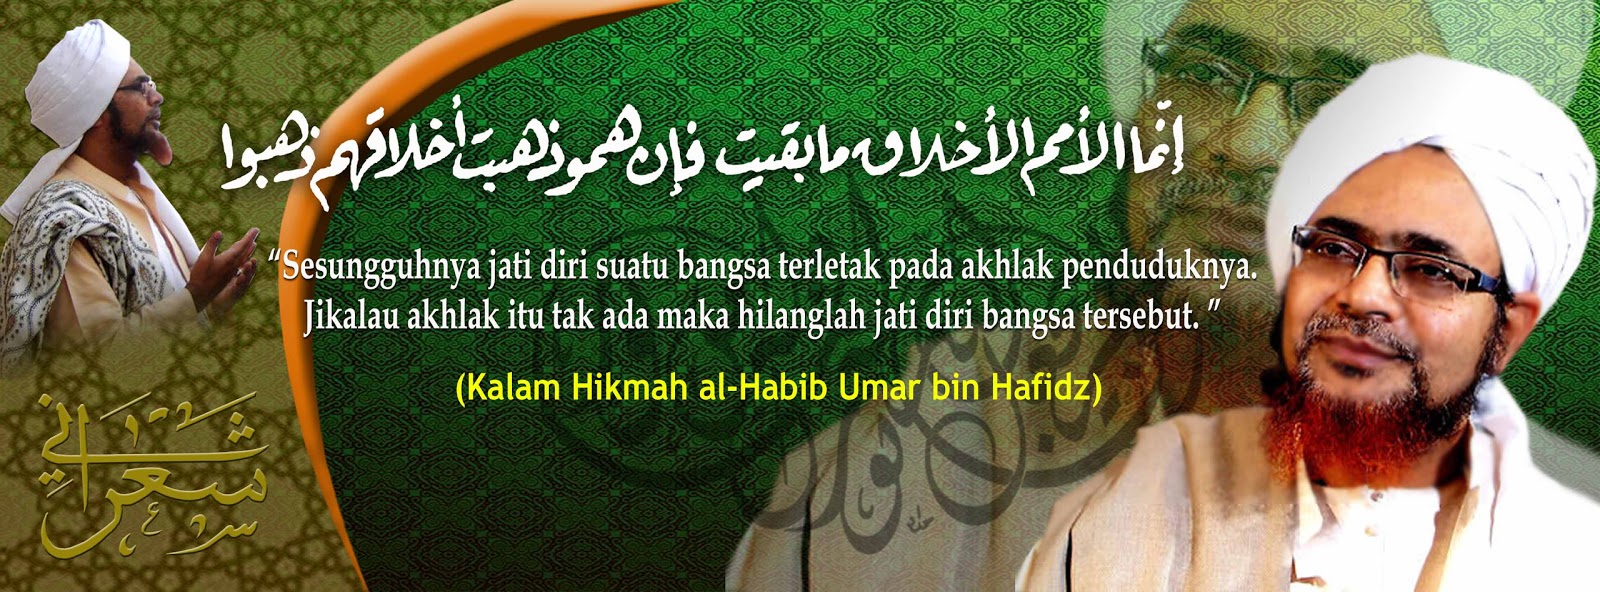 2015 Darul Habsyi Ahlussunnah Wal Jamaah